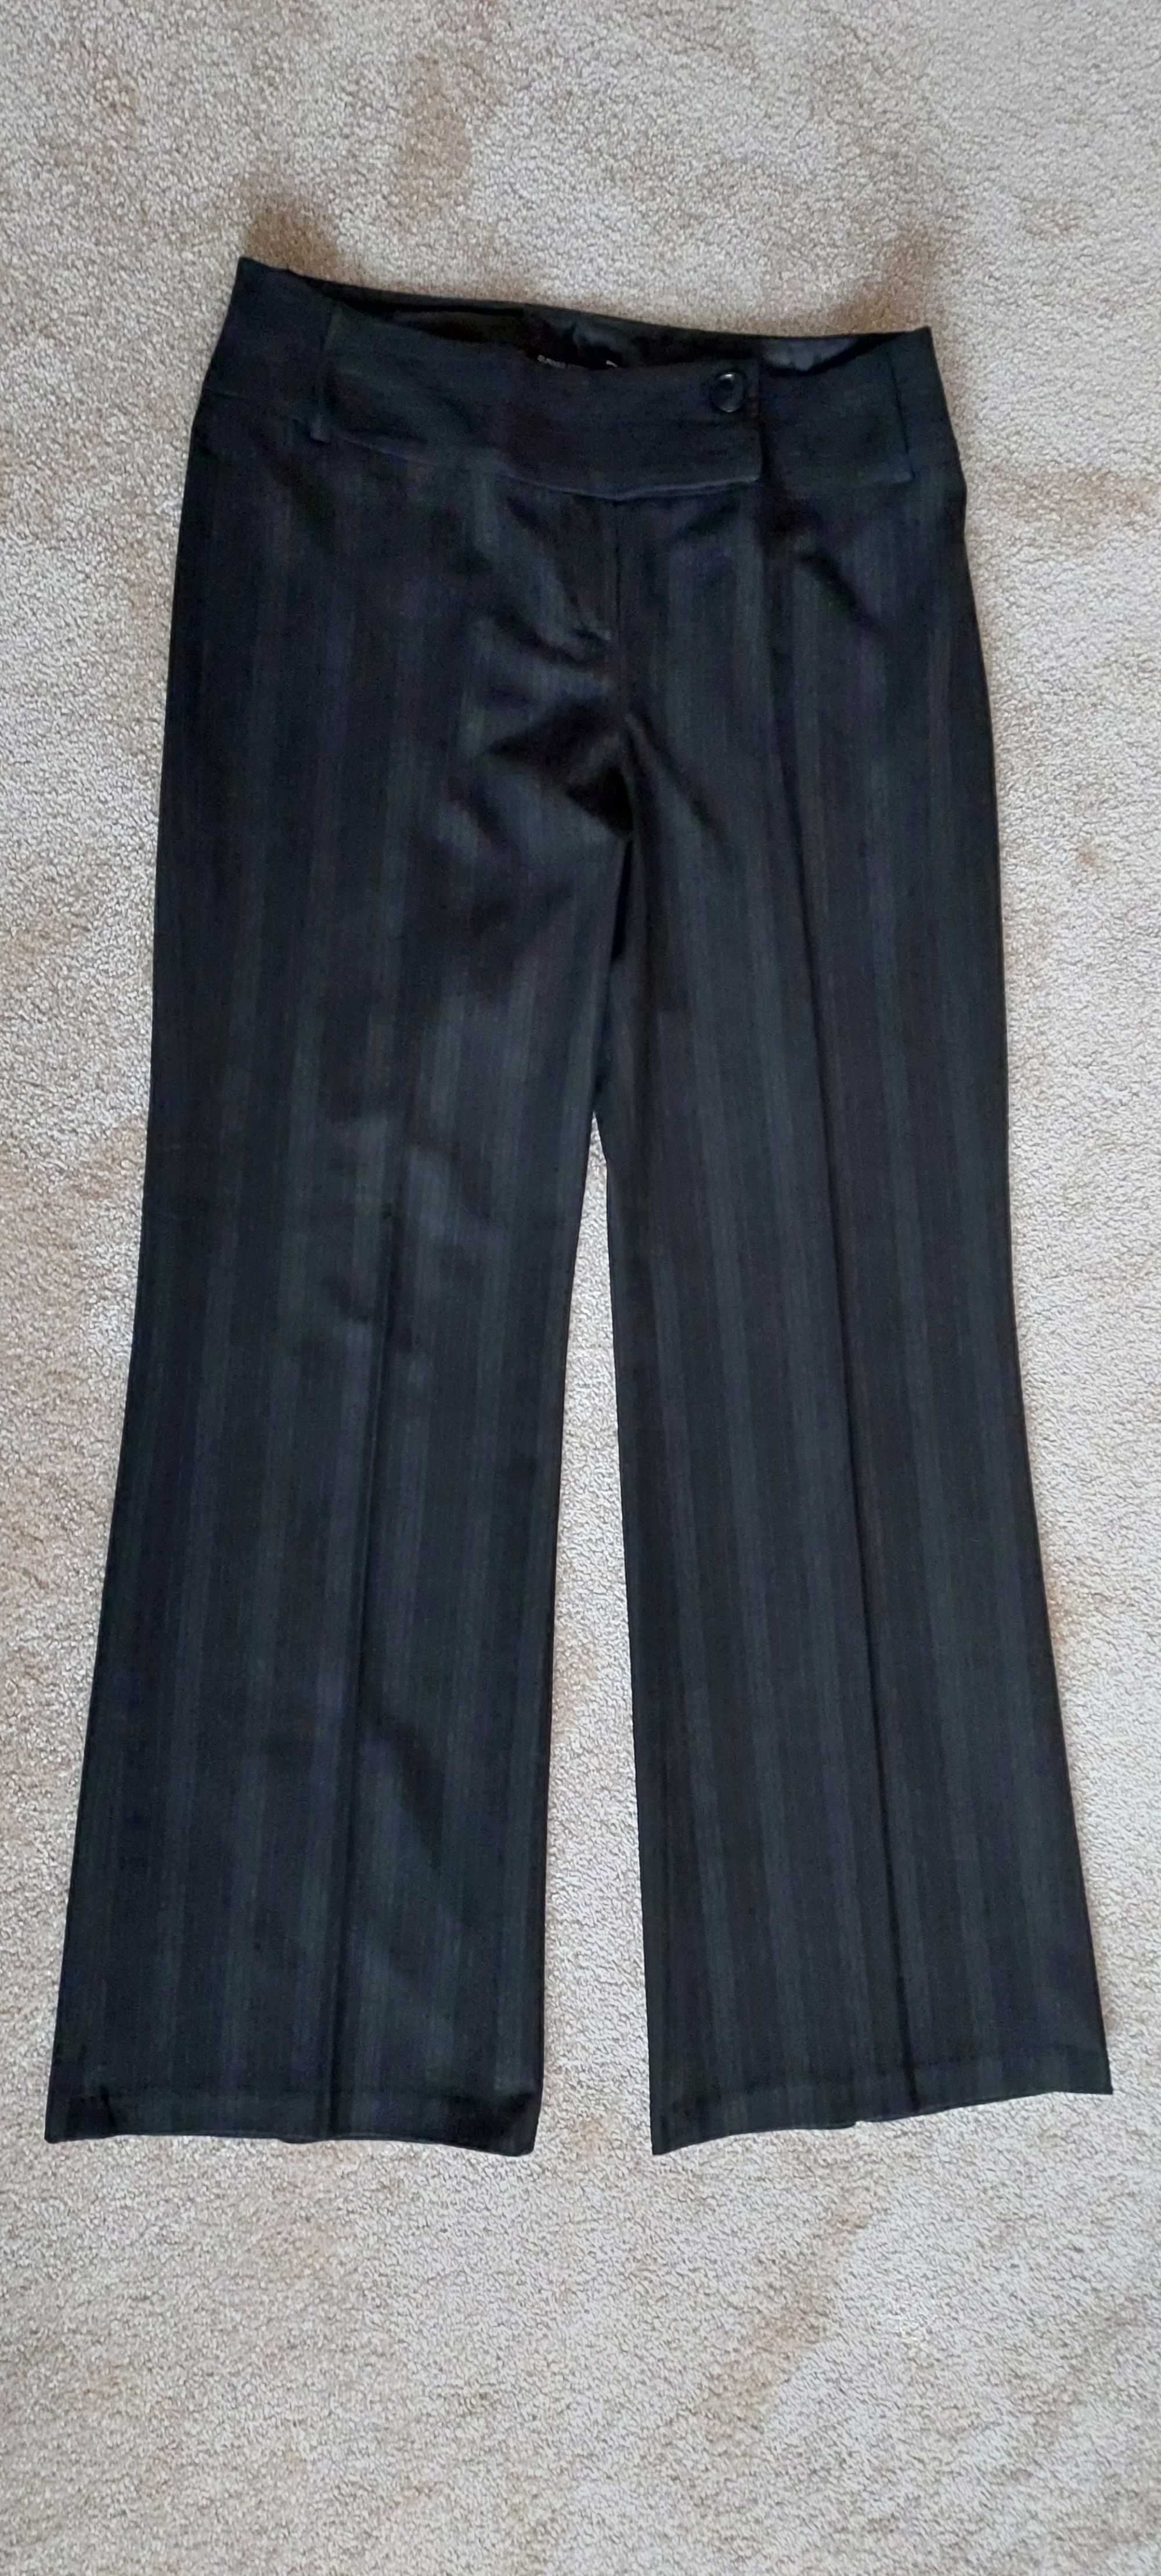 Eleganckie modne spodnie r.40 szeroka nogawka